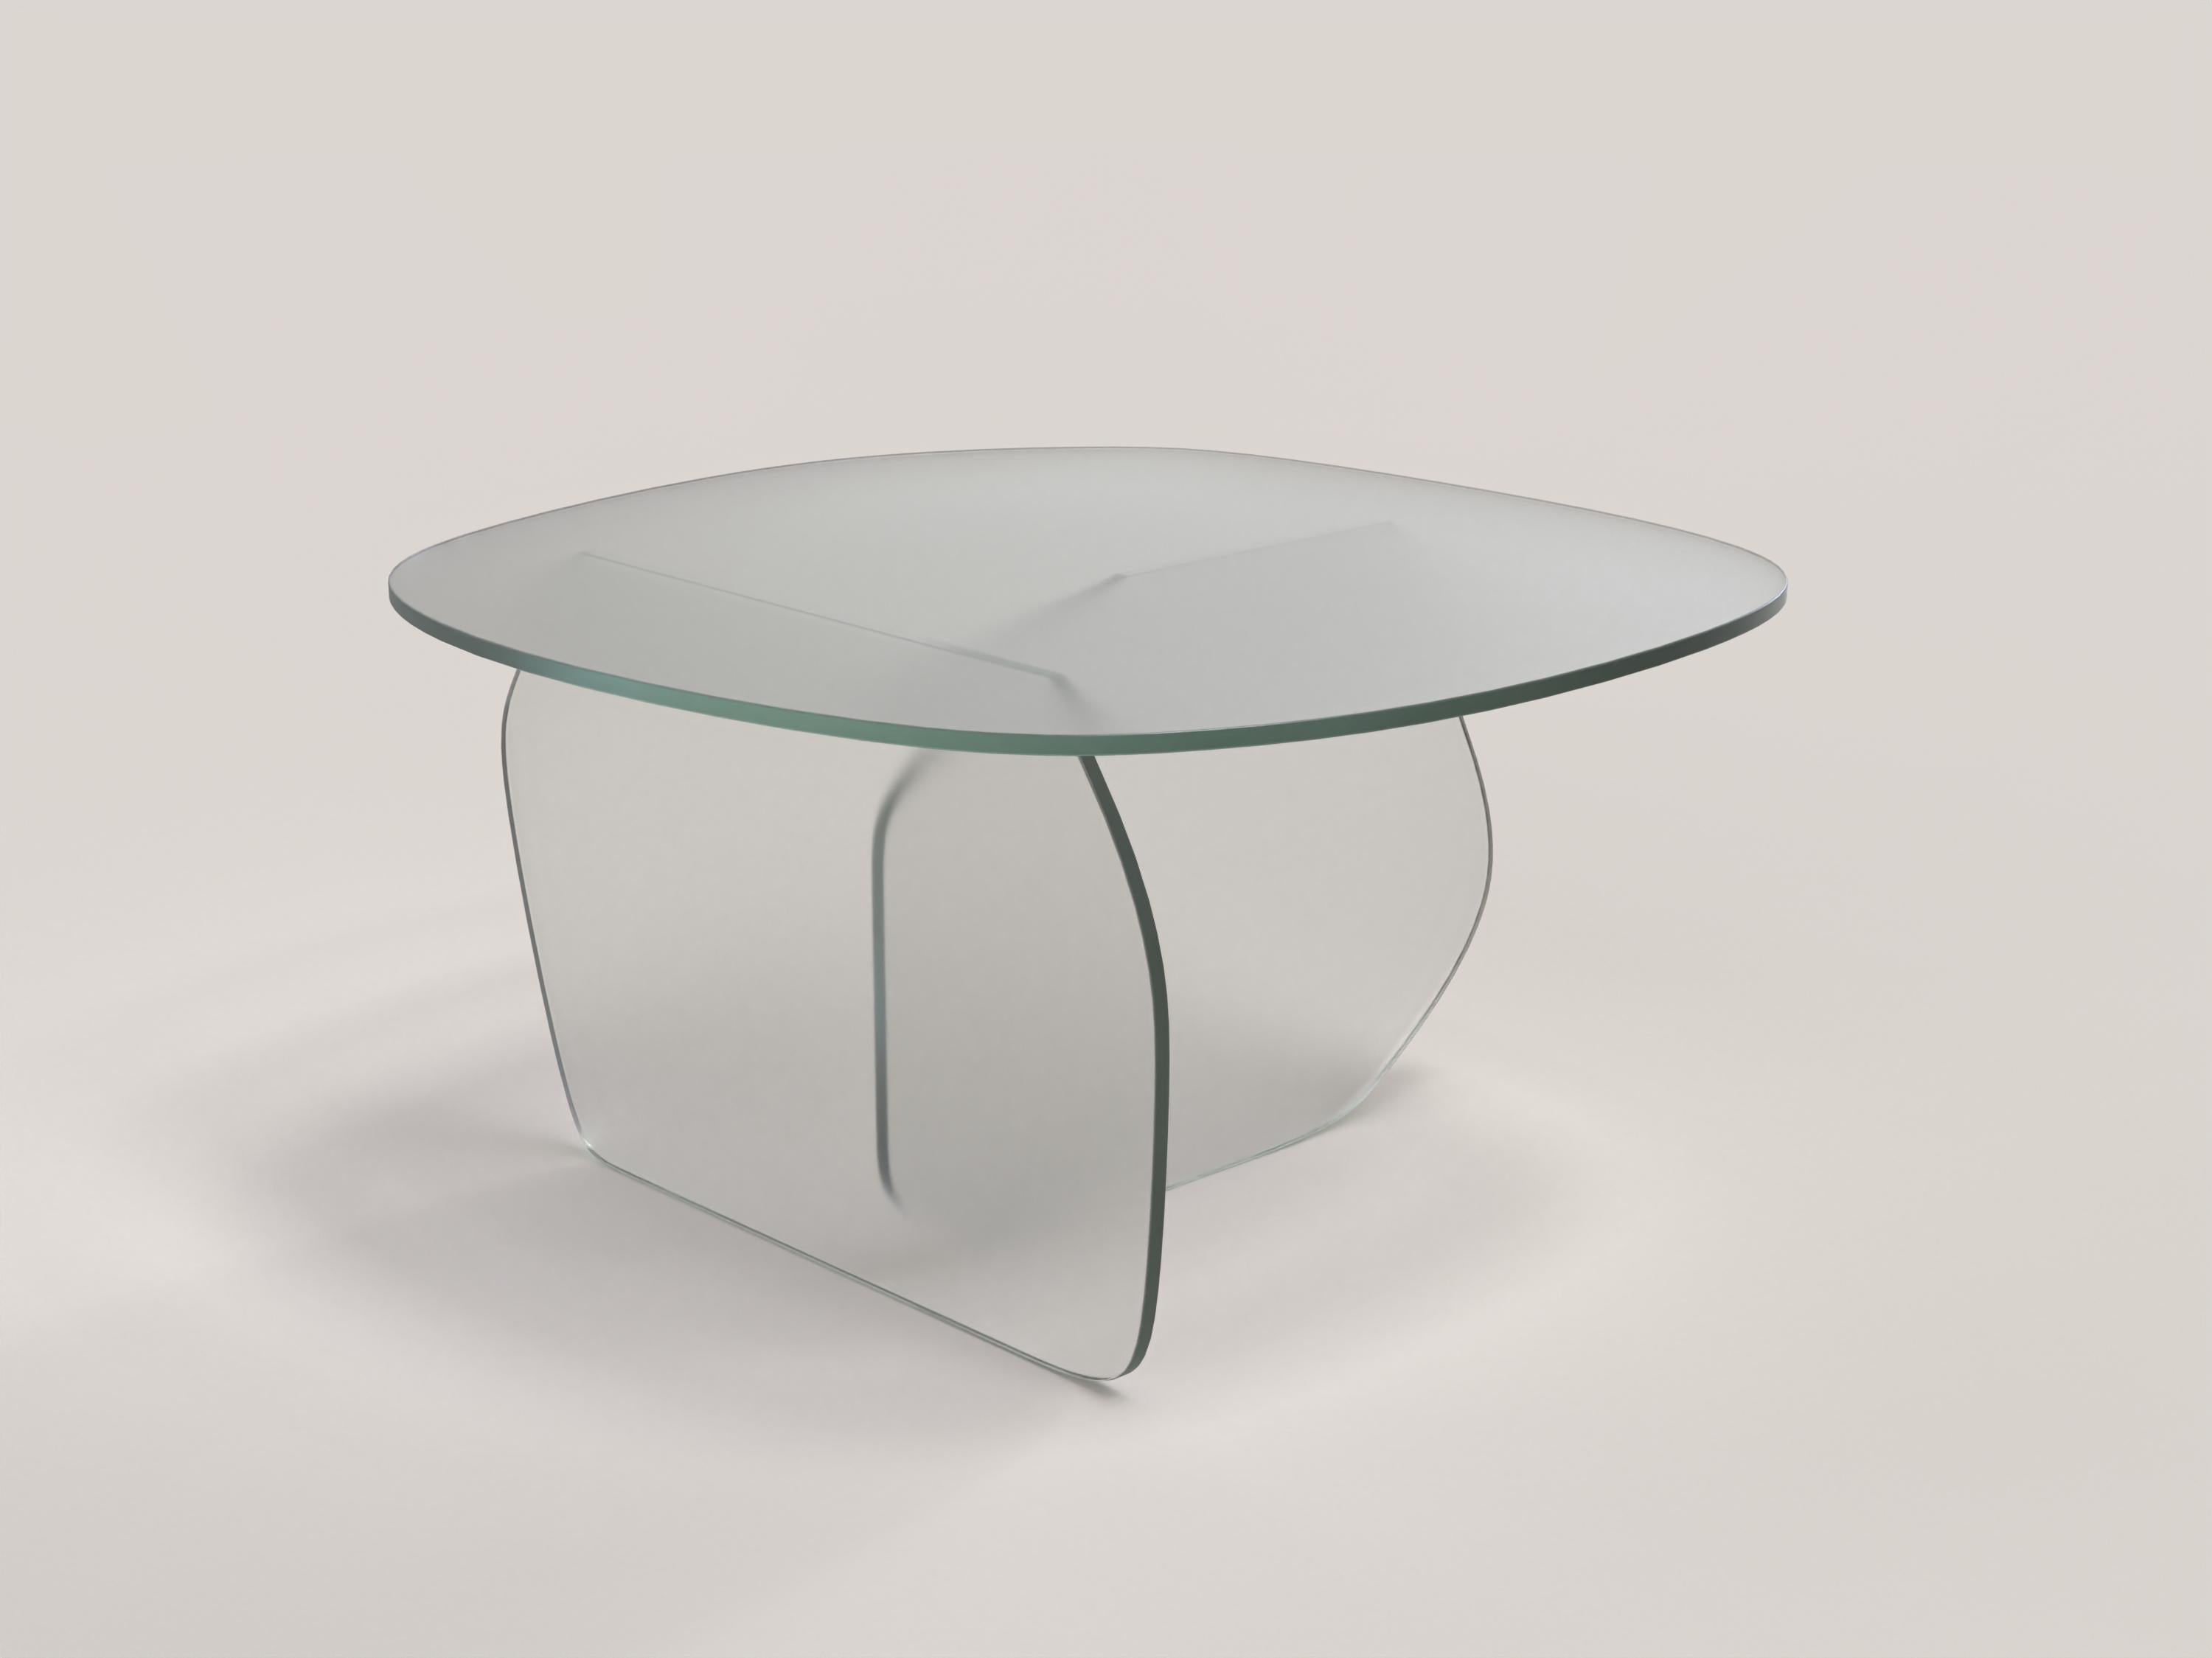 Panorama V2 est une table d'appoint du XXIe siècle réalisée par des artisans italiens en verre transparent satiné. La pièce est fabriquée en une édition limitée de 1000 exemplaires signés et progressivement numérotés. Il fait partie du langage de